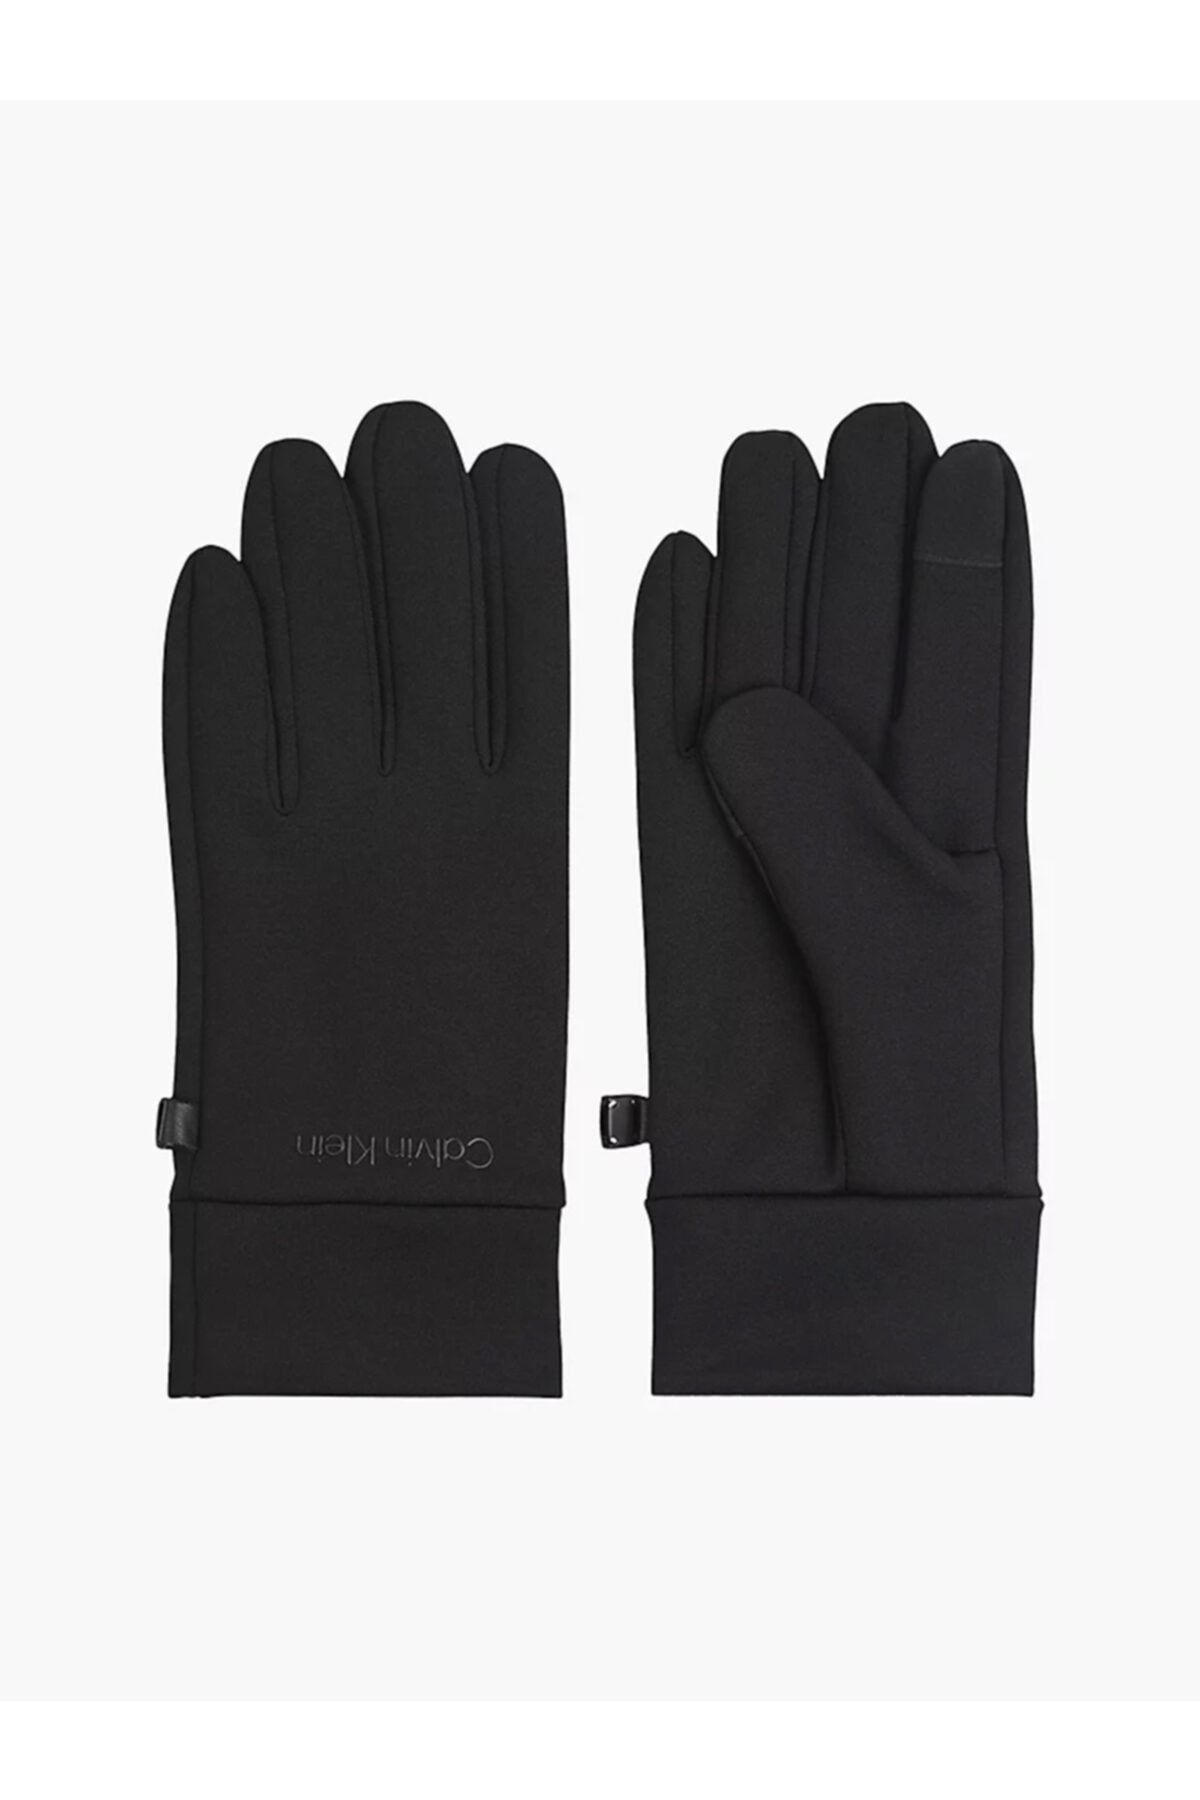 Calvin Klein Padded Performance Gloves Erkek Eldiven k50k507426